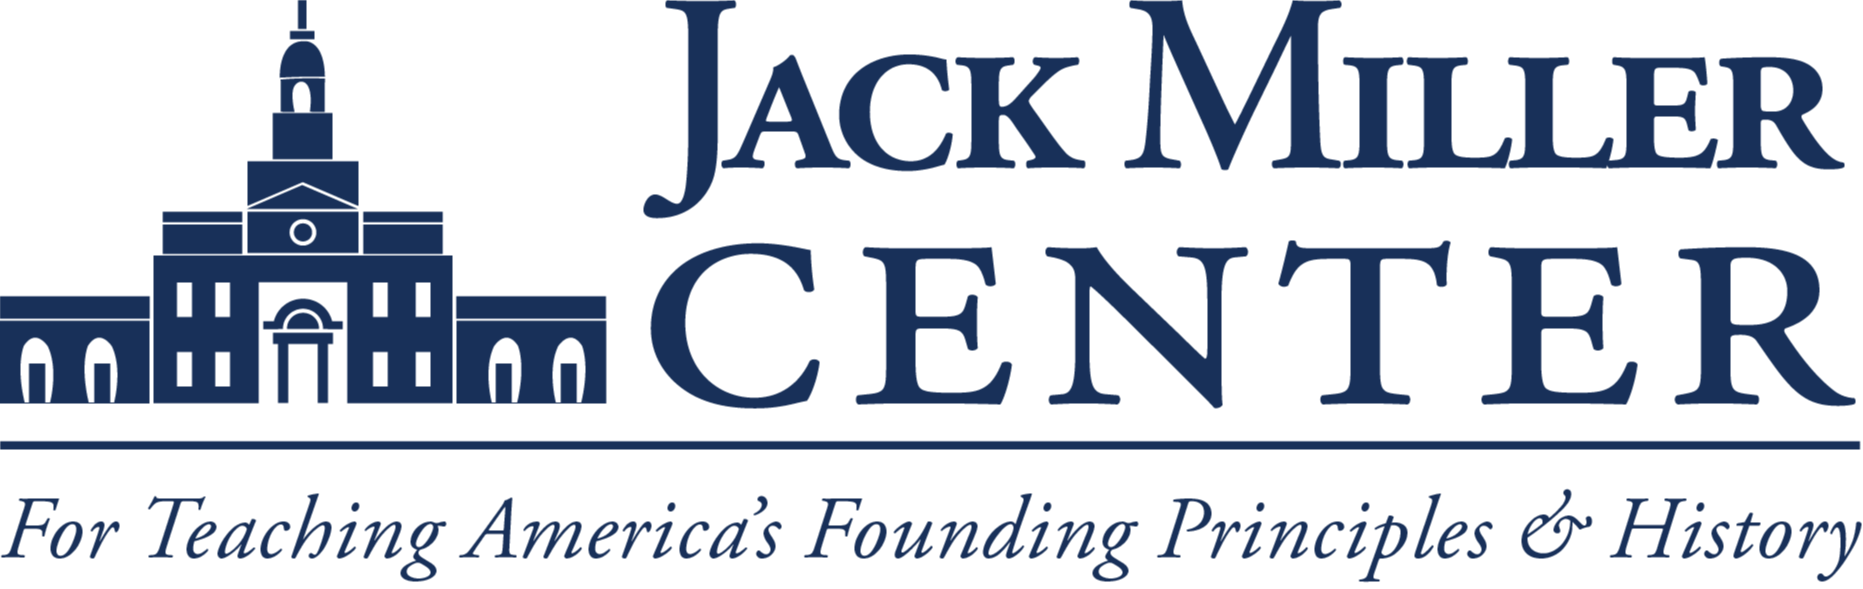 Jack Miller Center For Teaching America's Founding Principles logo